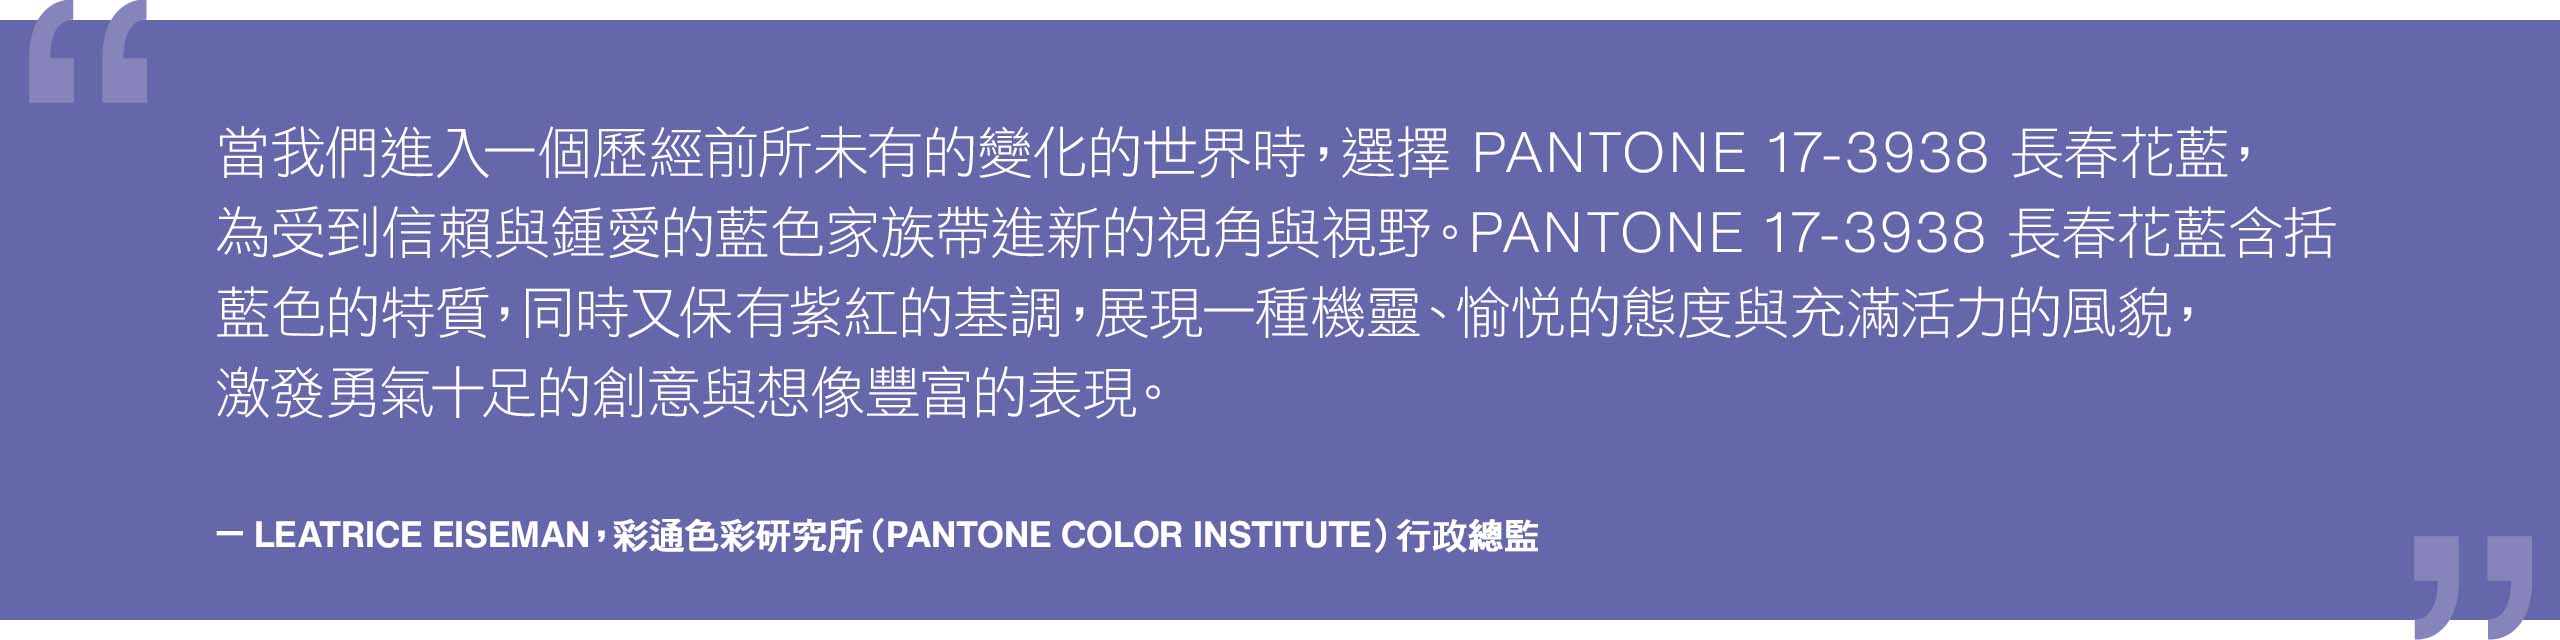 Pantone色彩研究所執行總監